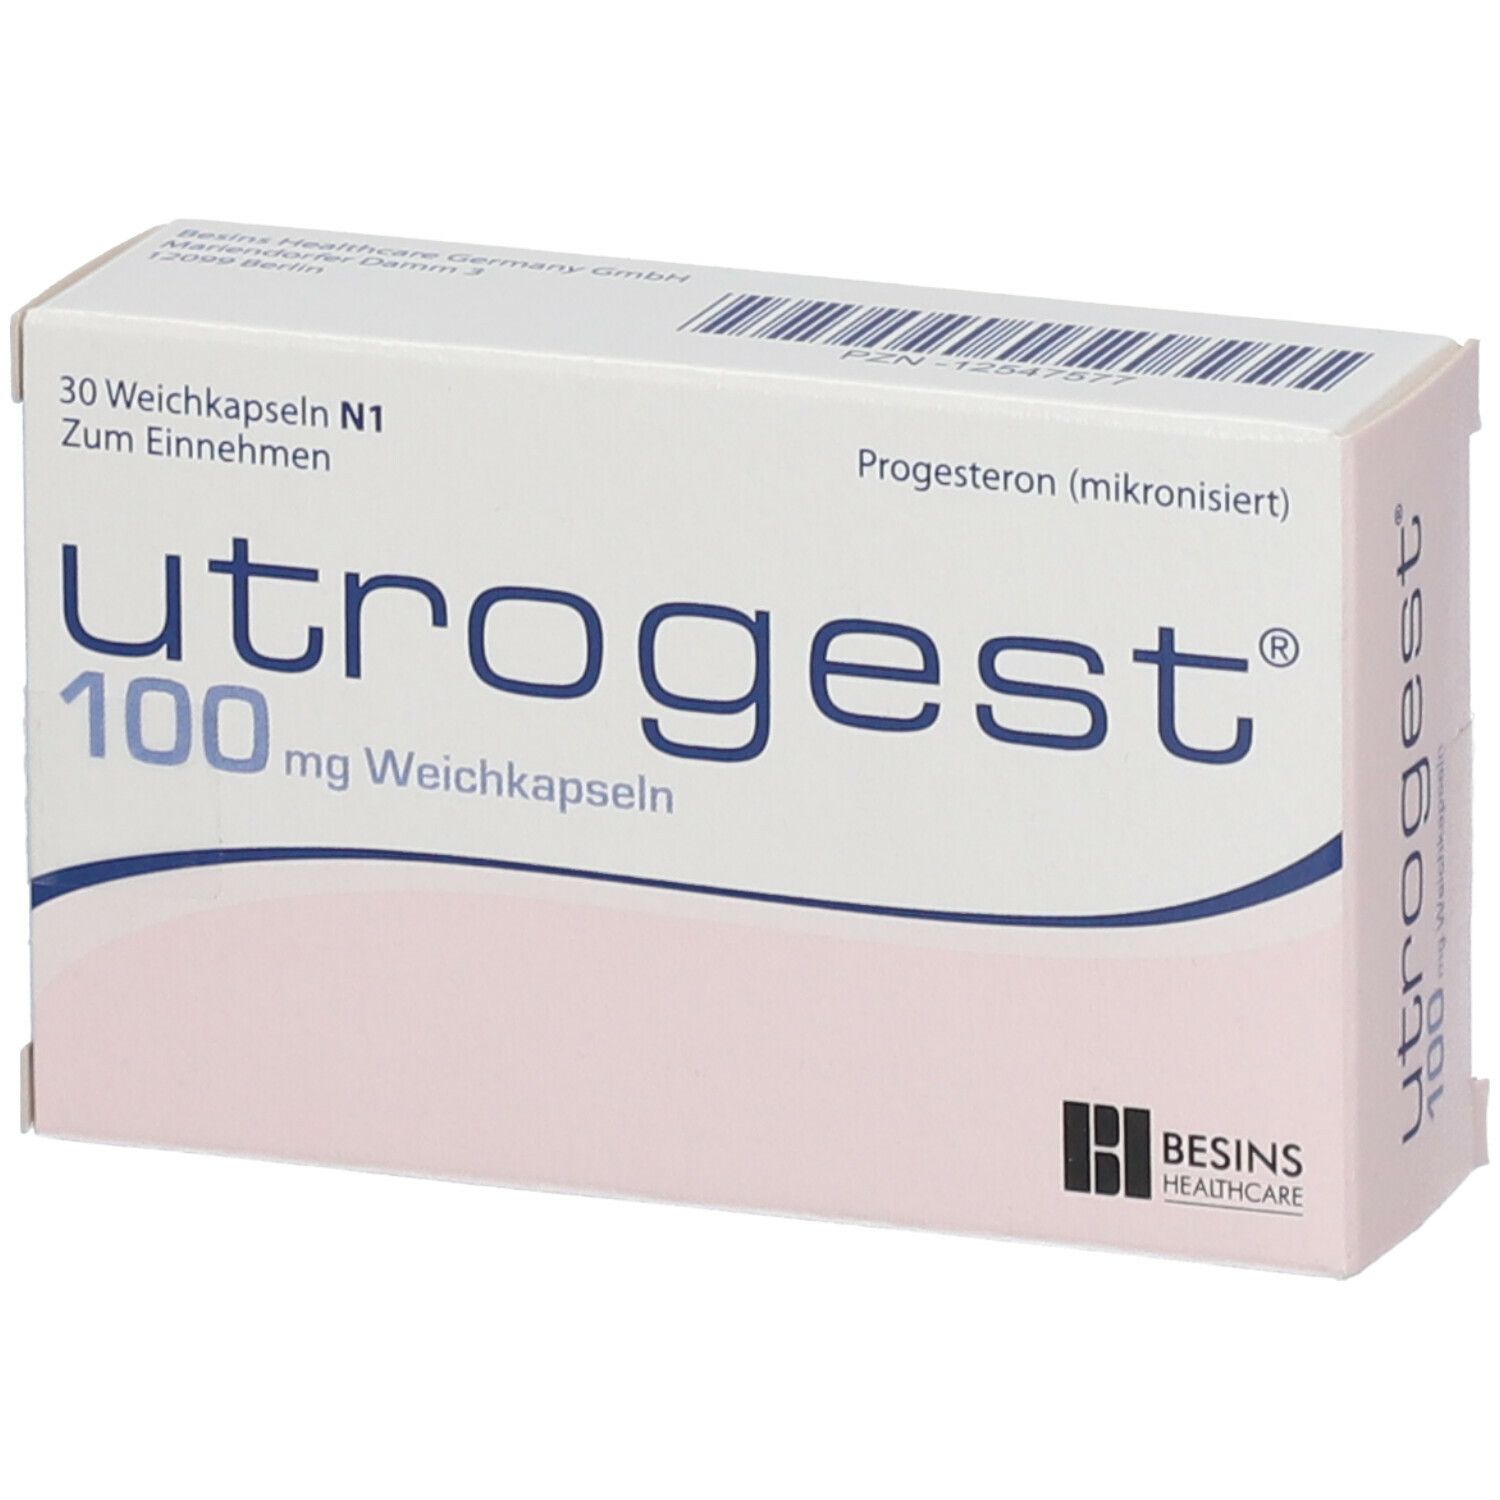 utrogest® 100 mg